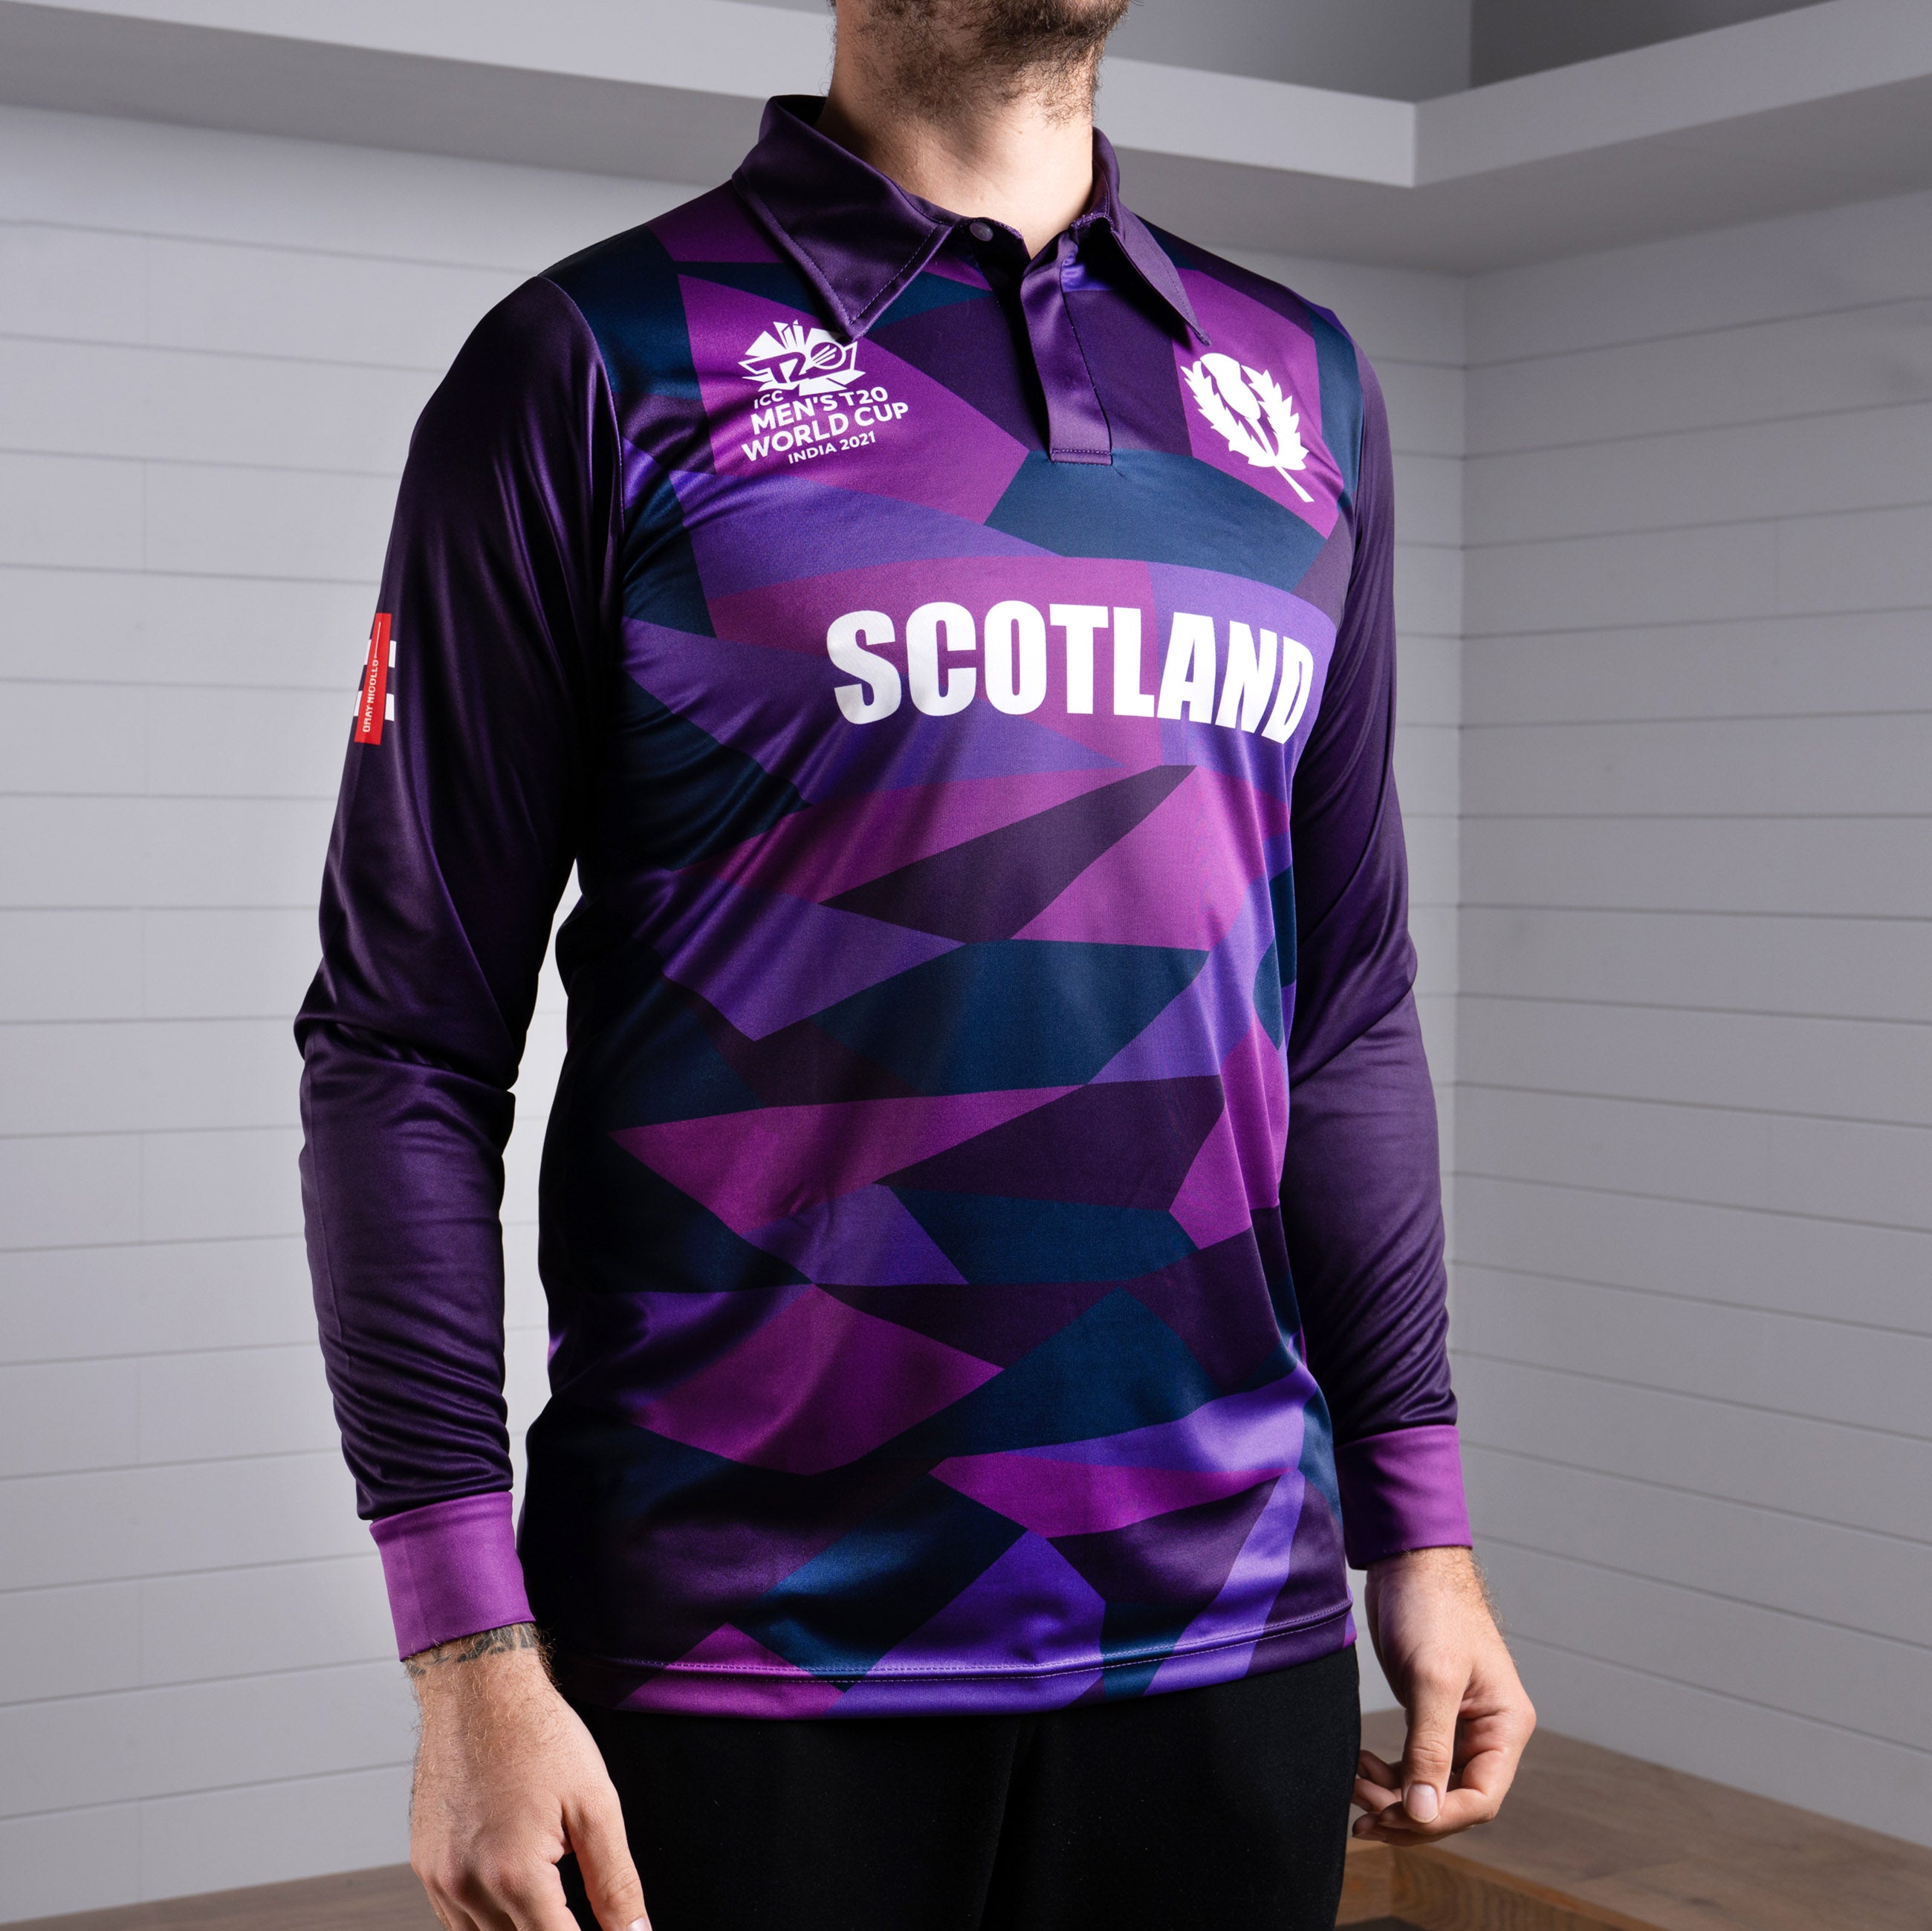 Cricket Scotland T20 World Cup Long Sleeve Shirt - Men's